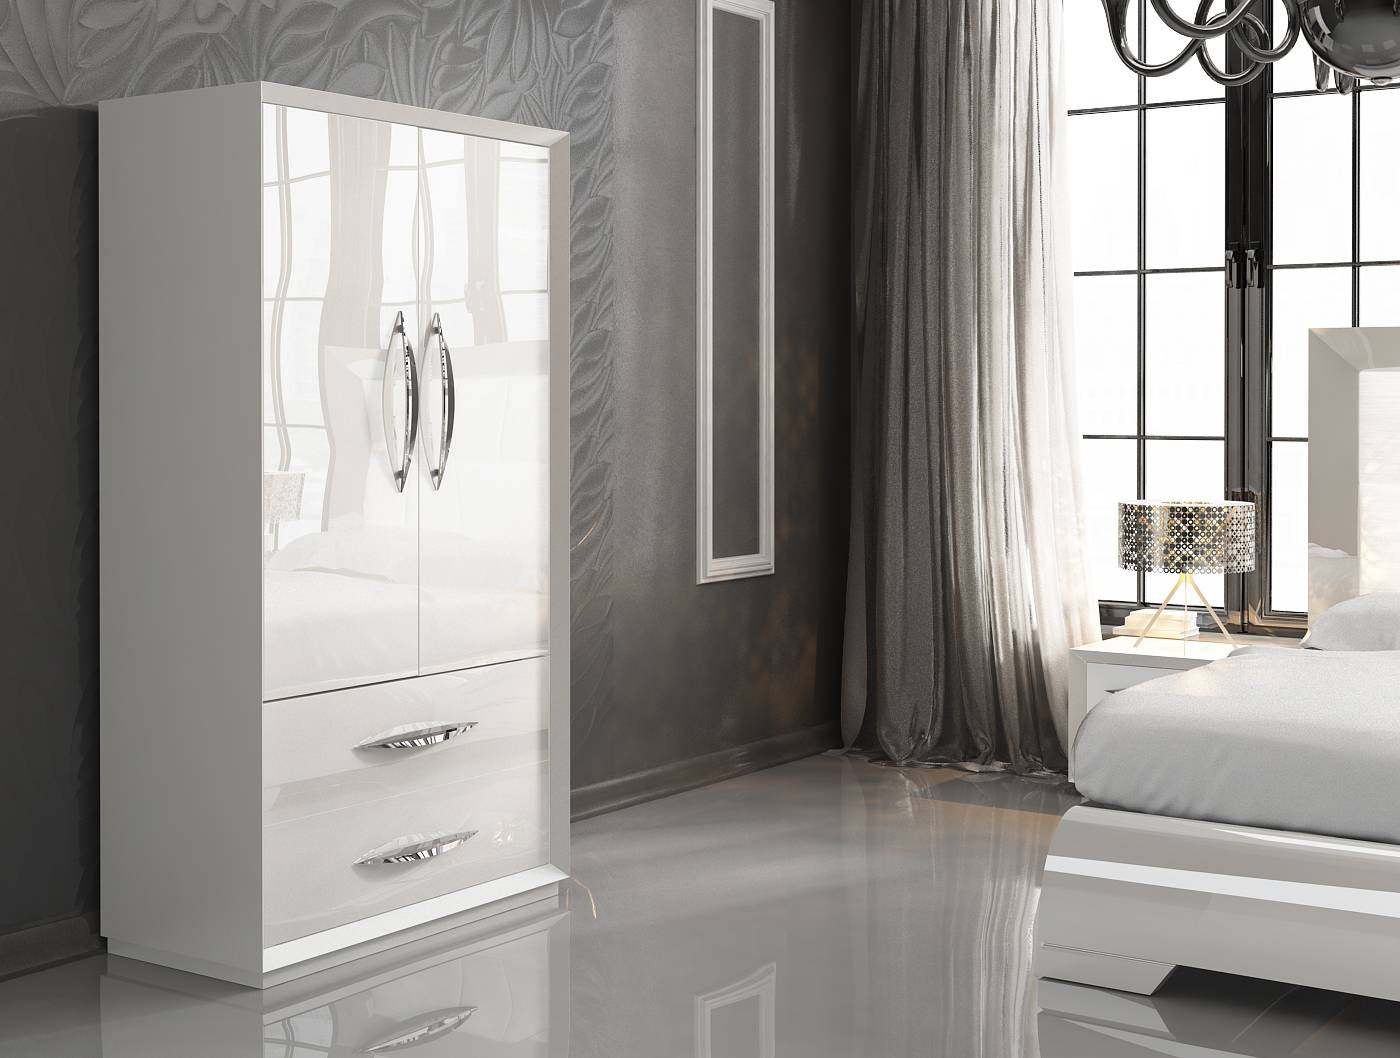 Made in Spain Wood Luxury Bedroom Furniture Sets